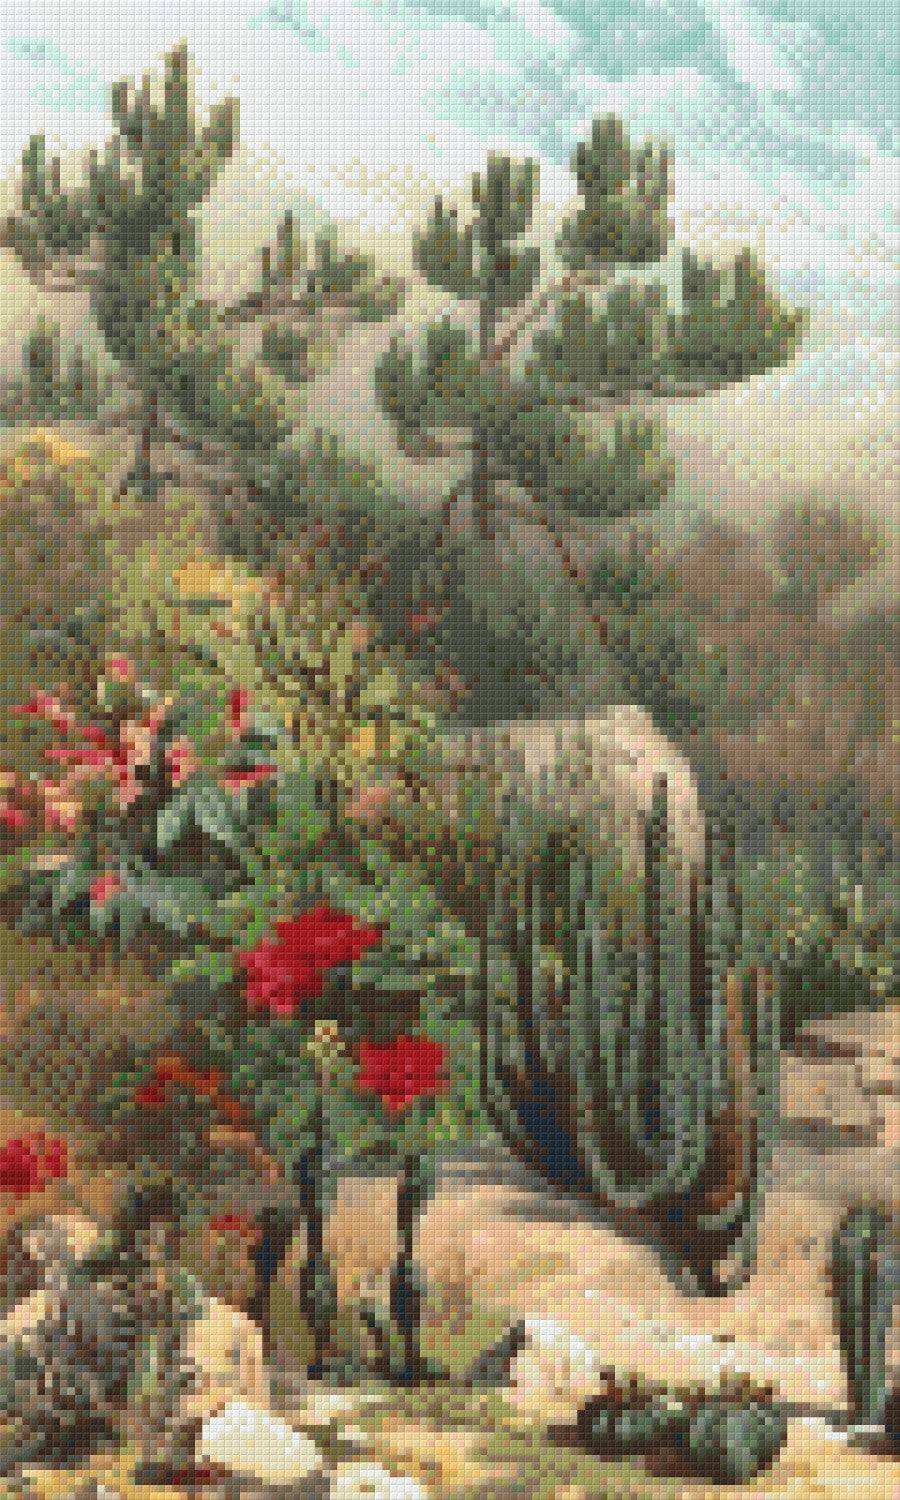 Pixel hobby classic set - cactus landscape